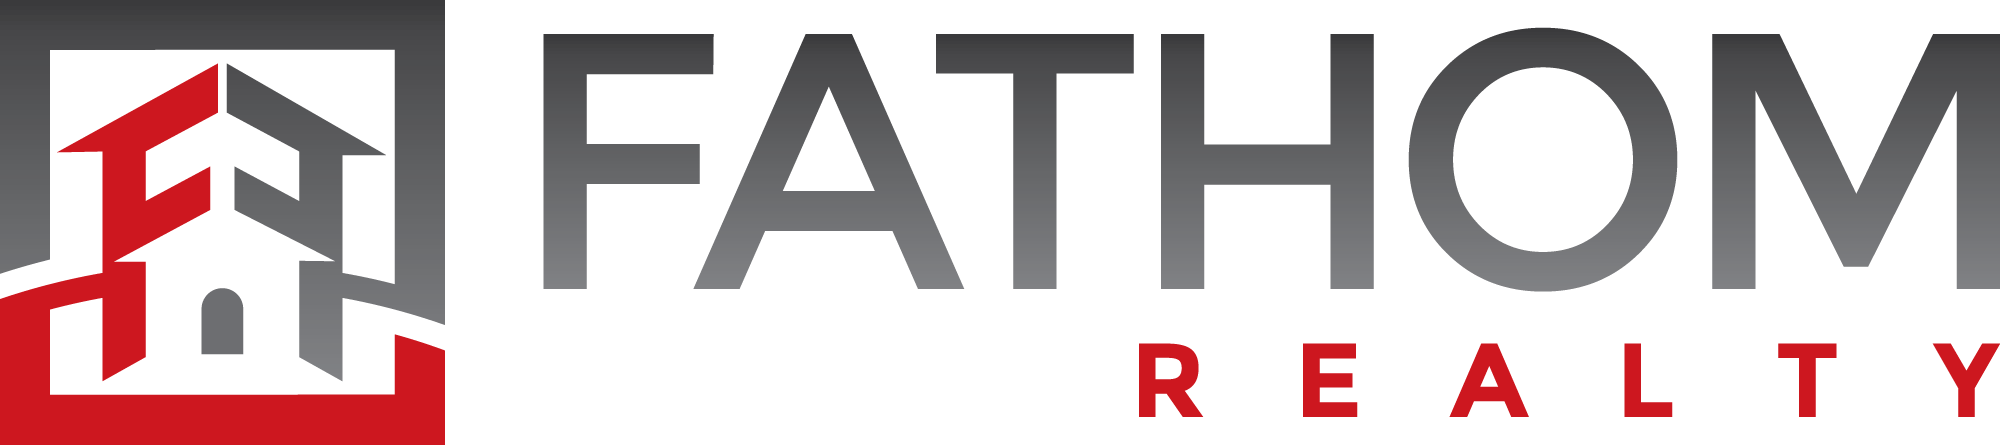 Fathom Realty Company Logo